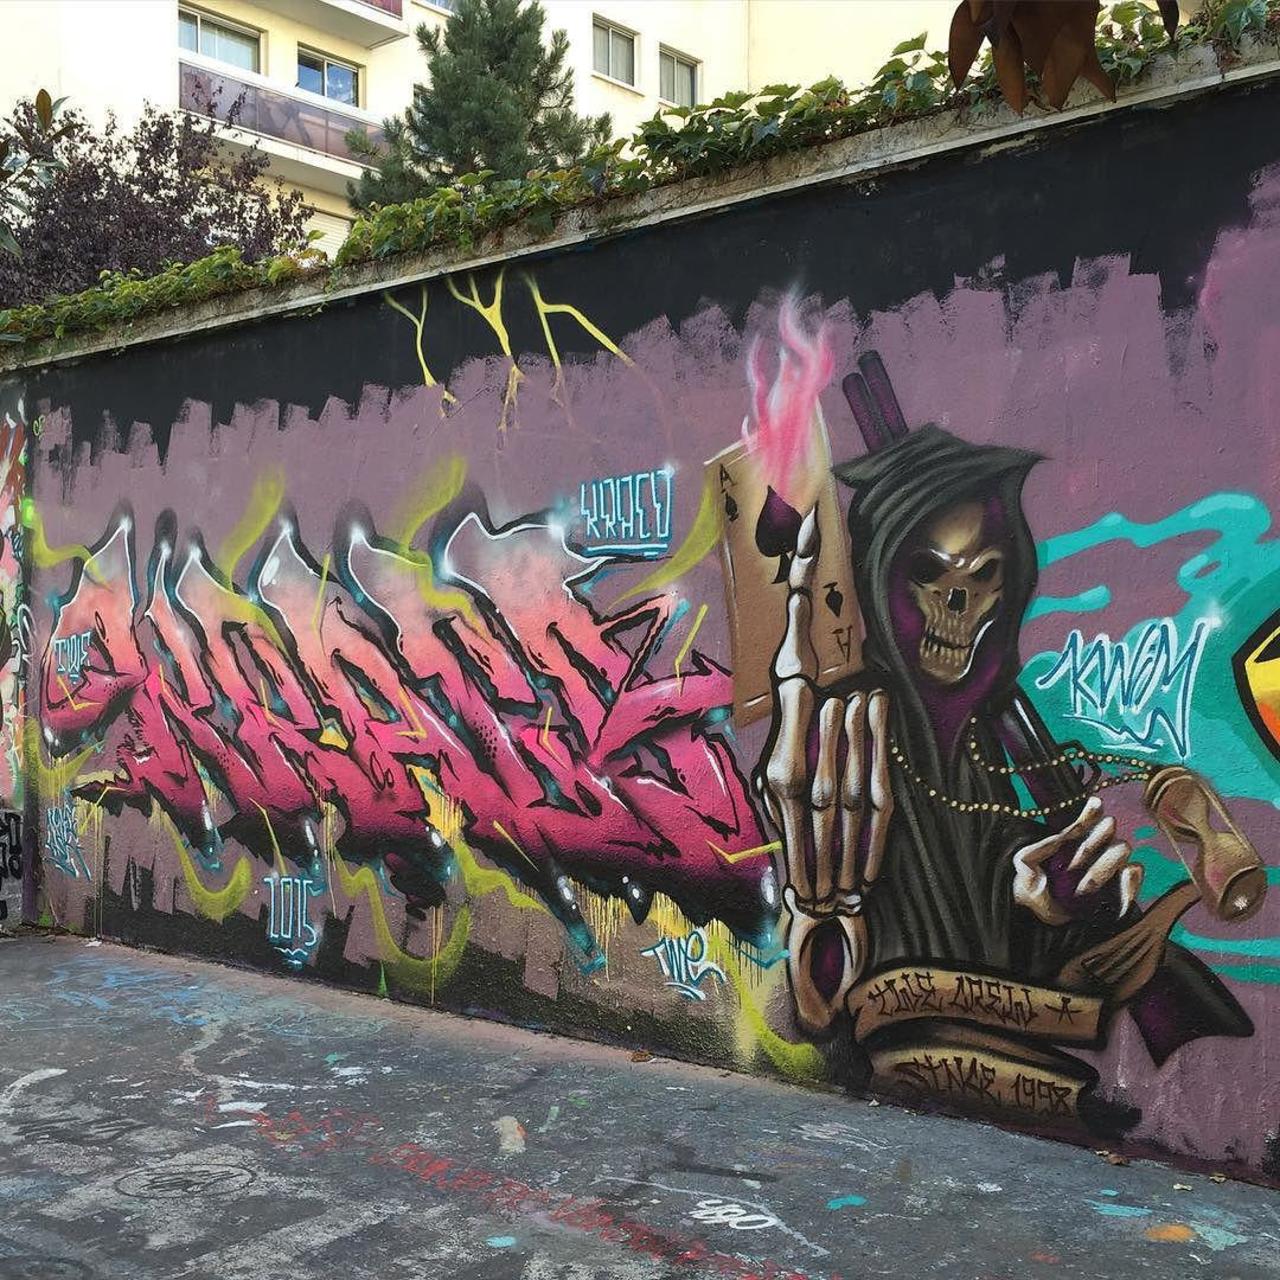 #Paris #graffiti photo by @ijustdontknow http://ift.tt/1QhMtwf #StreetArt http://t.co/H0fhFf6s1i